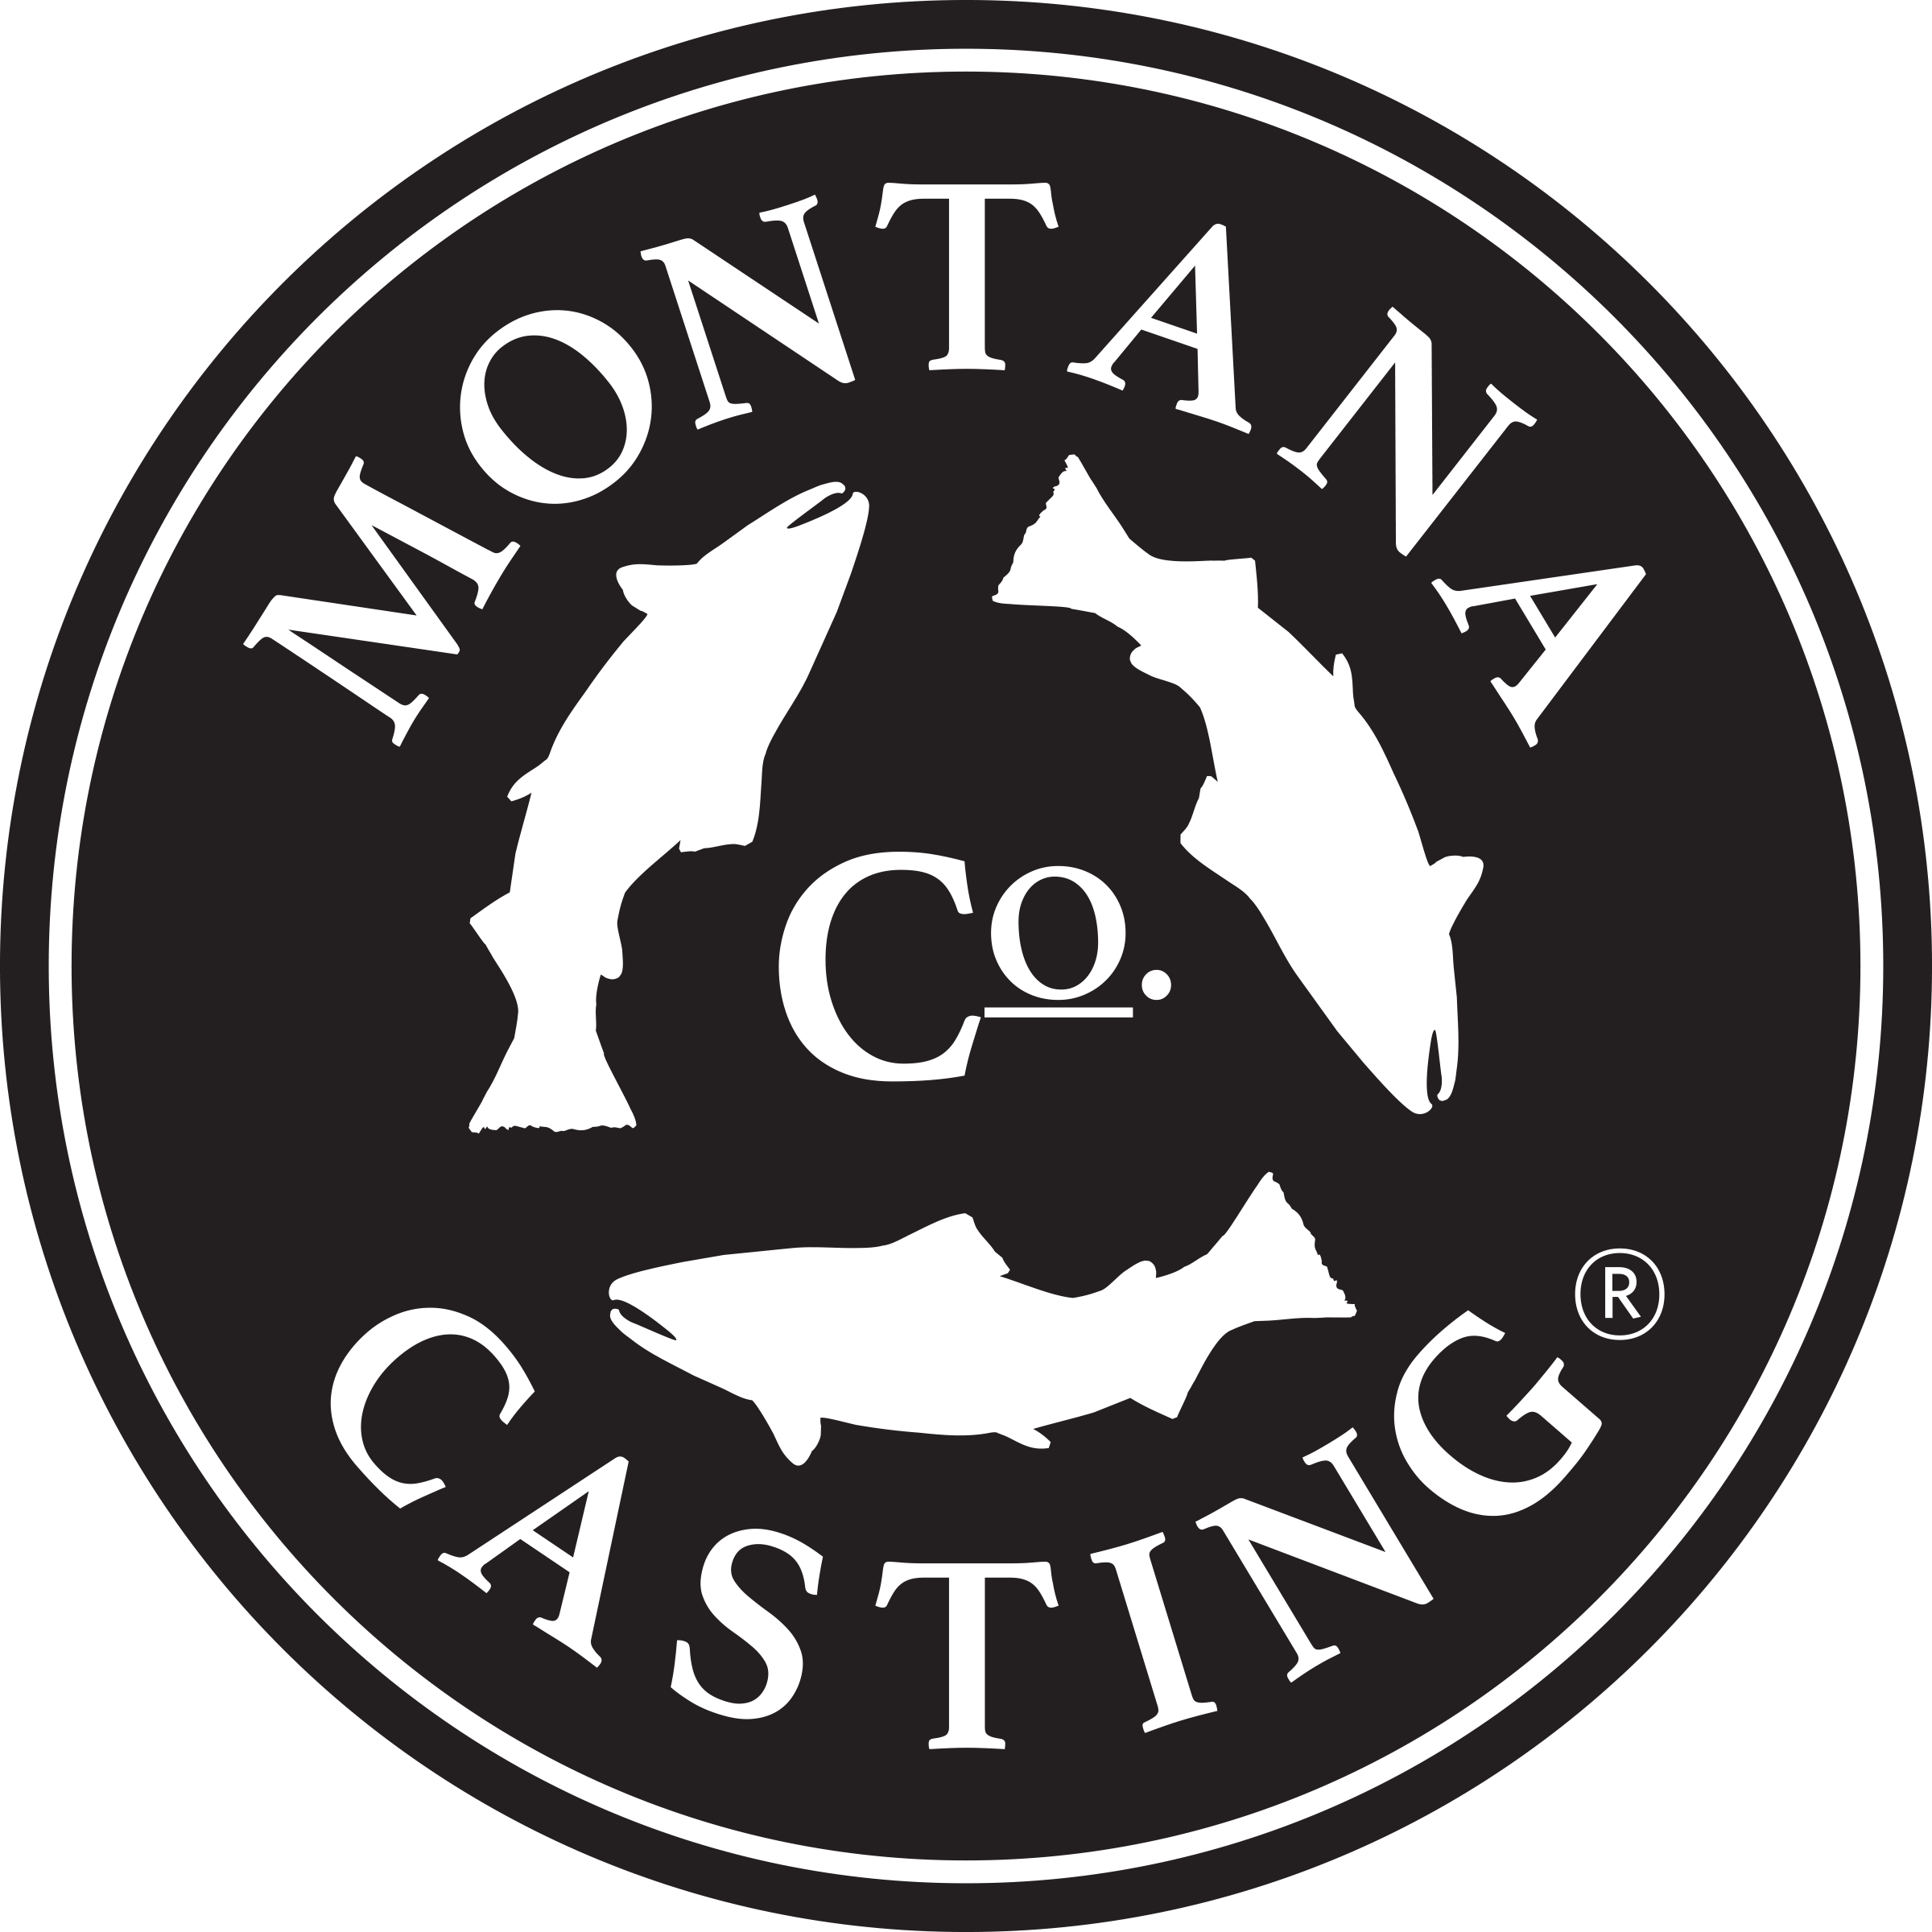 Montana Casting Co. Logo